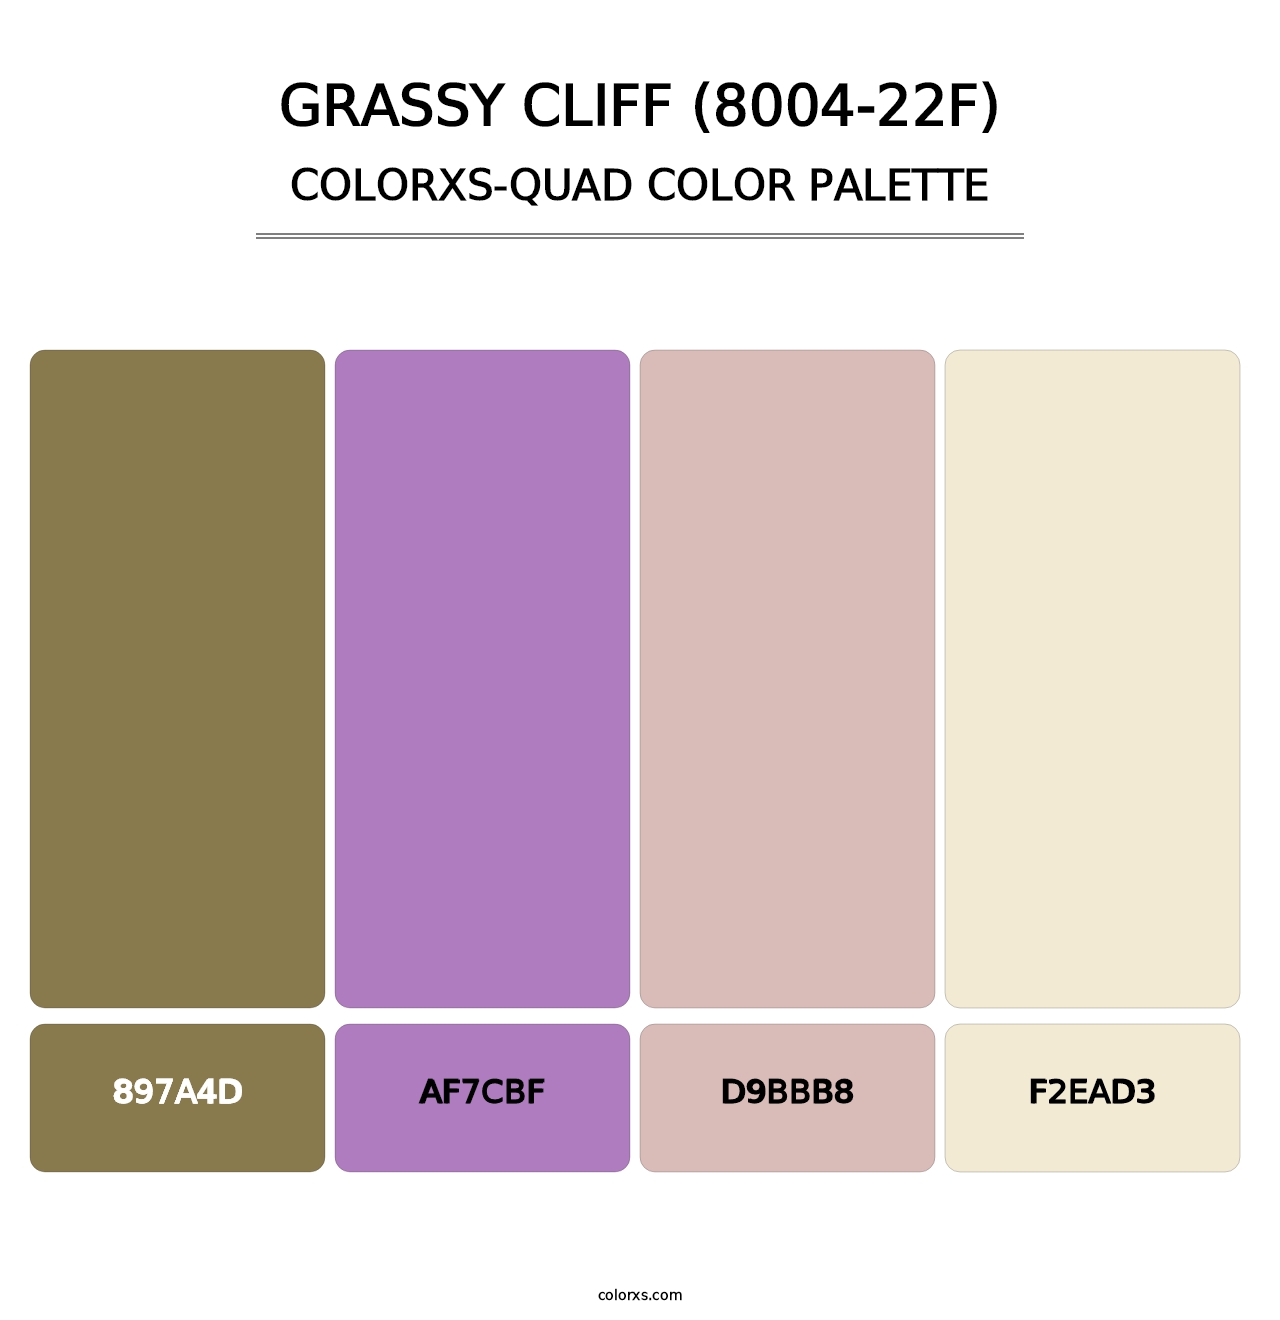 Grassy Cliff (8004-22F) - Colorxs Quad Palette